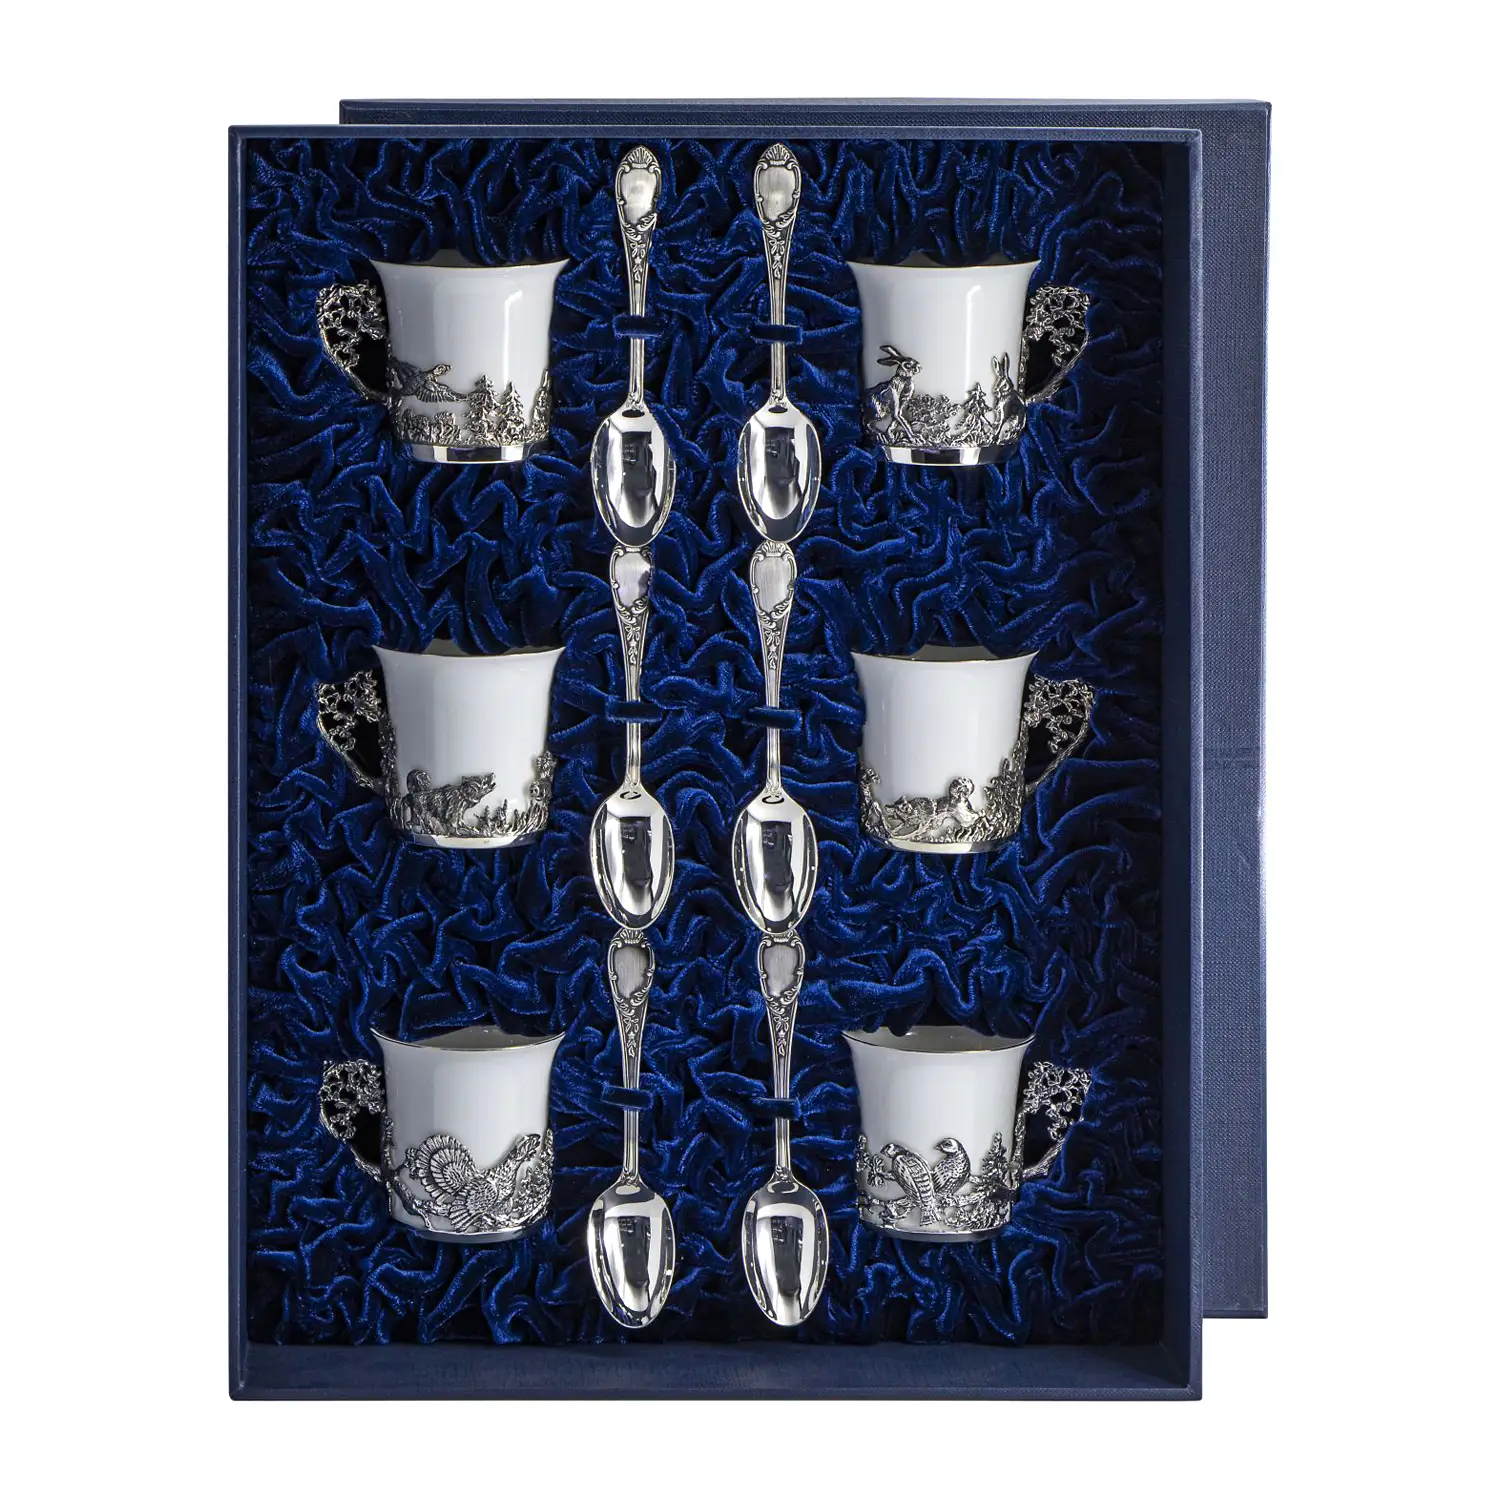 Набор кофейных чашек Охотничьи: ложка, чашка (Серебро 925) набор кофейных чашек роза ложка чашка серебро 925